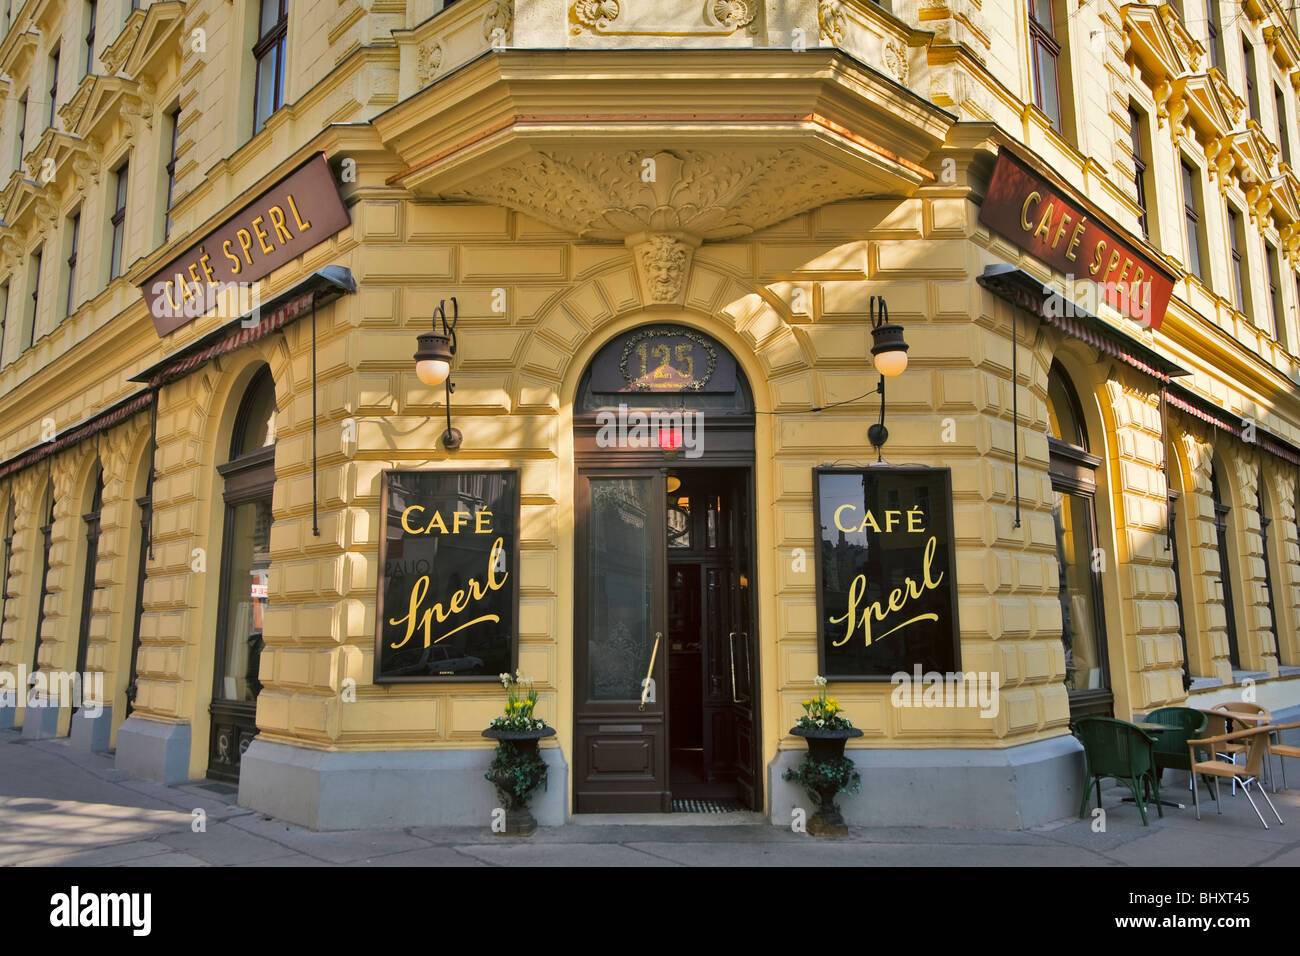 oldvienna cafe Sperl in Vienna, Austria Stock Photo